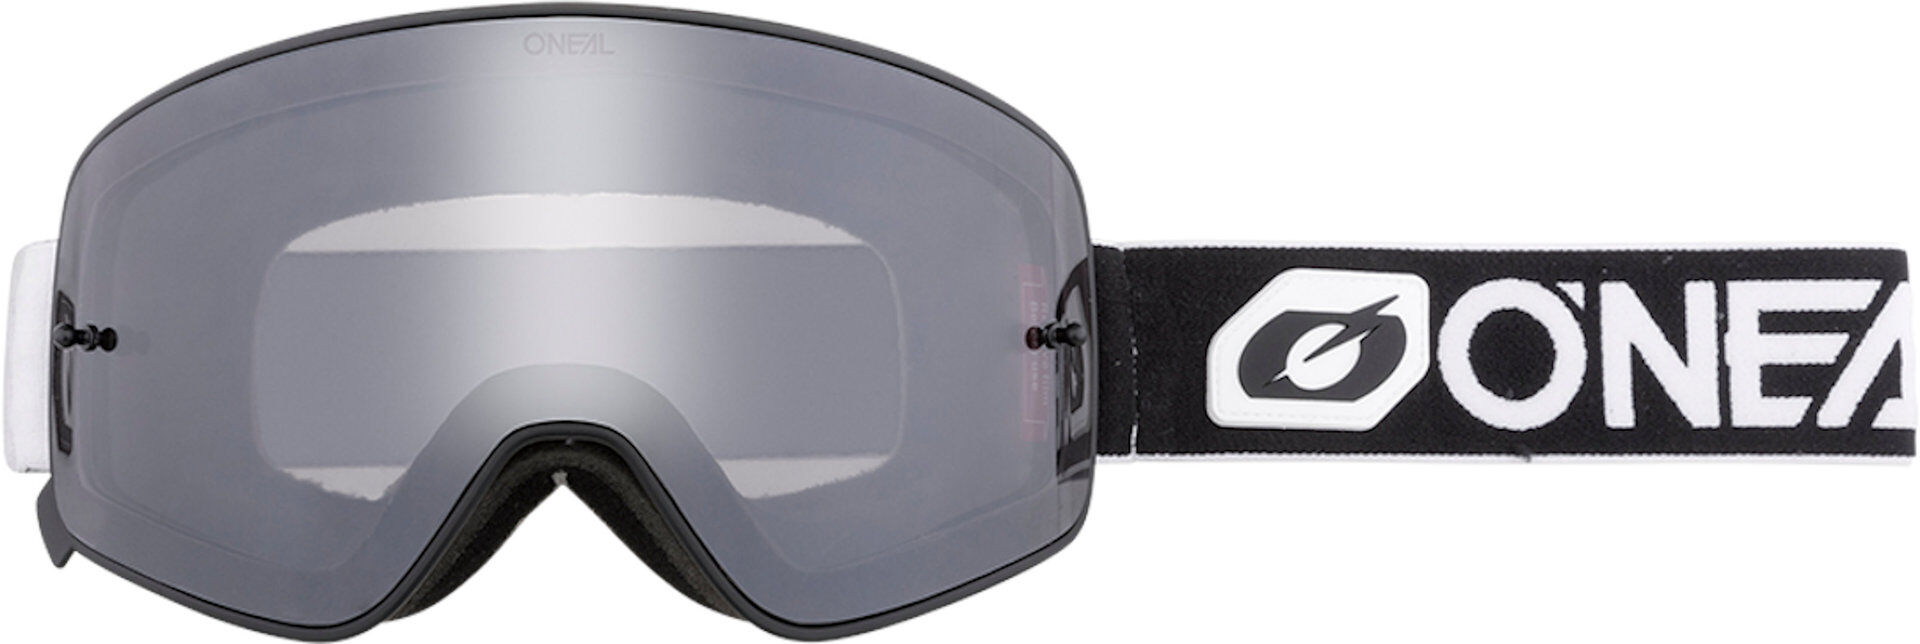 Oneal B-50 Force V.22 Gafas de motocross - Negro Blanco (un tamaño)